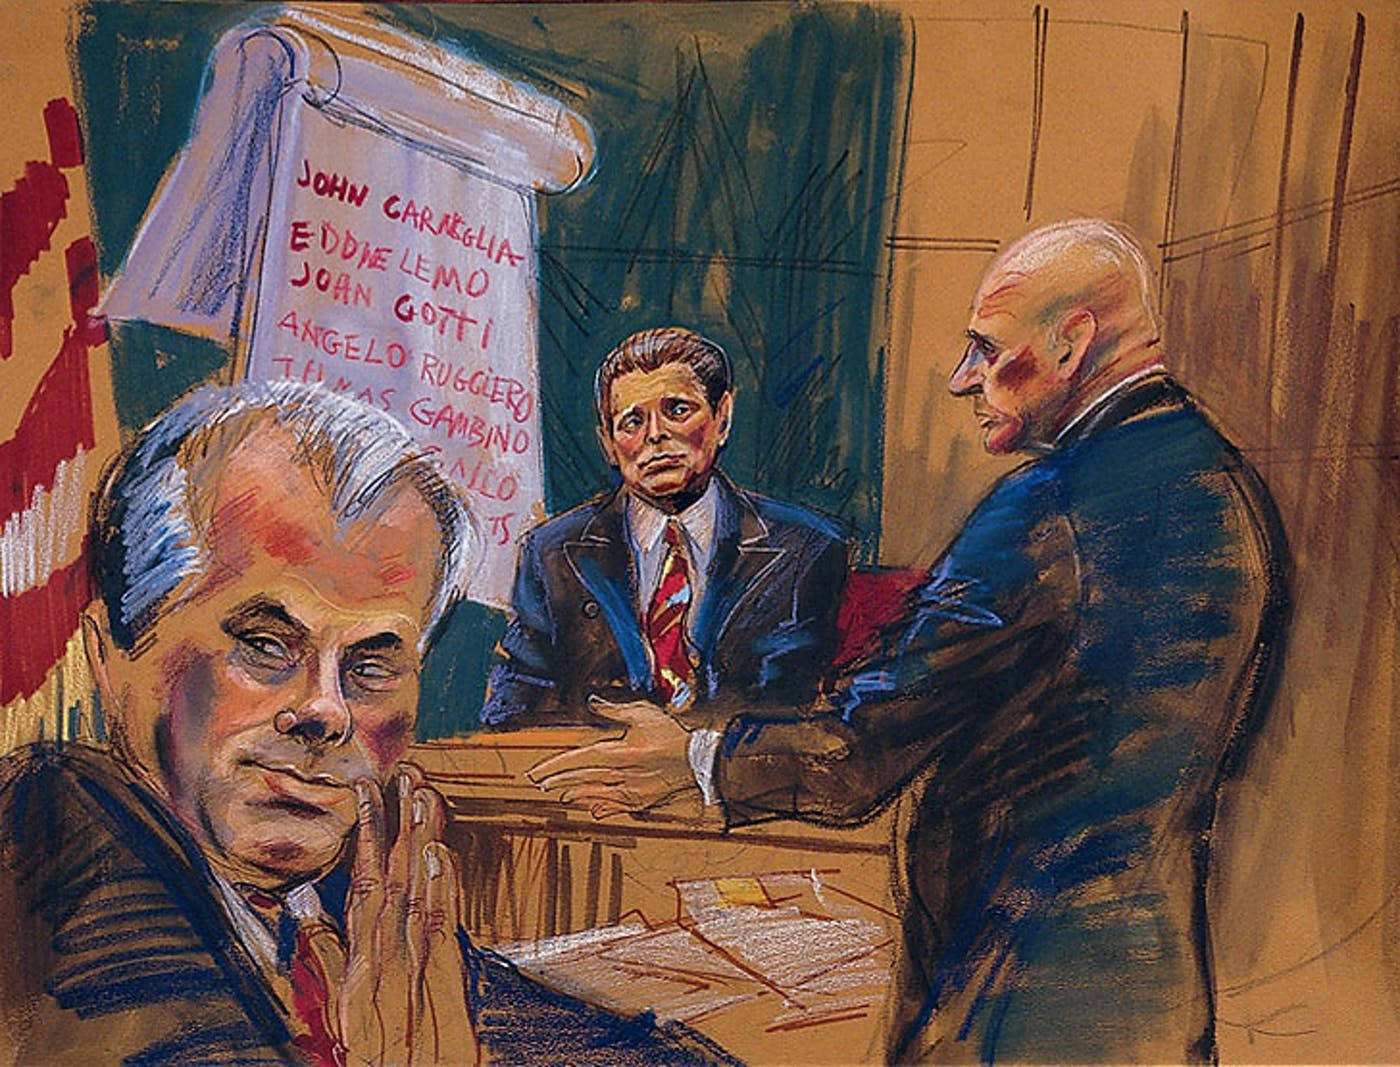 John Gotti Trial Art